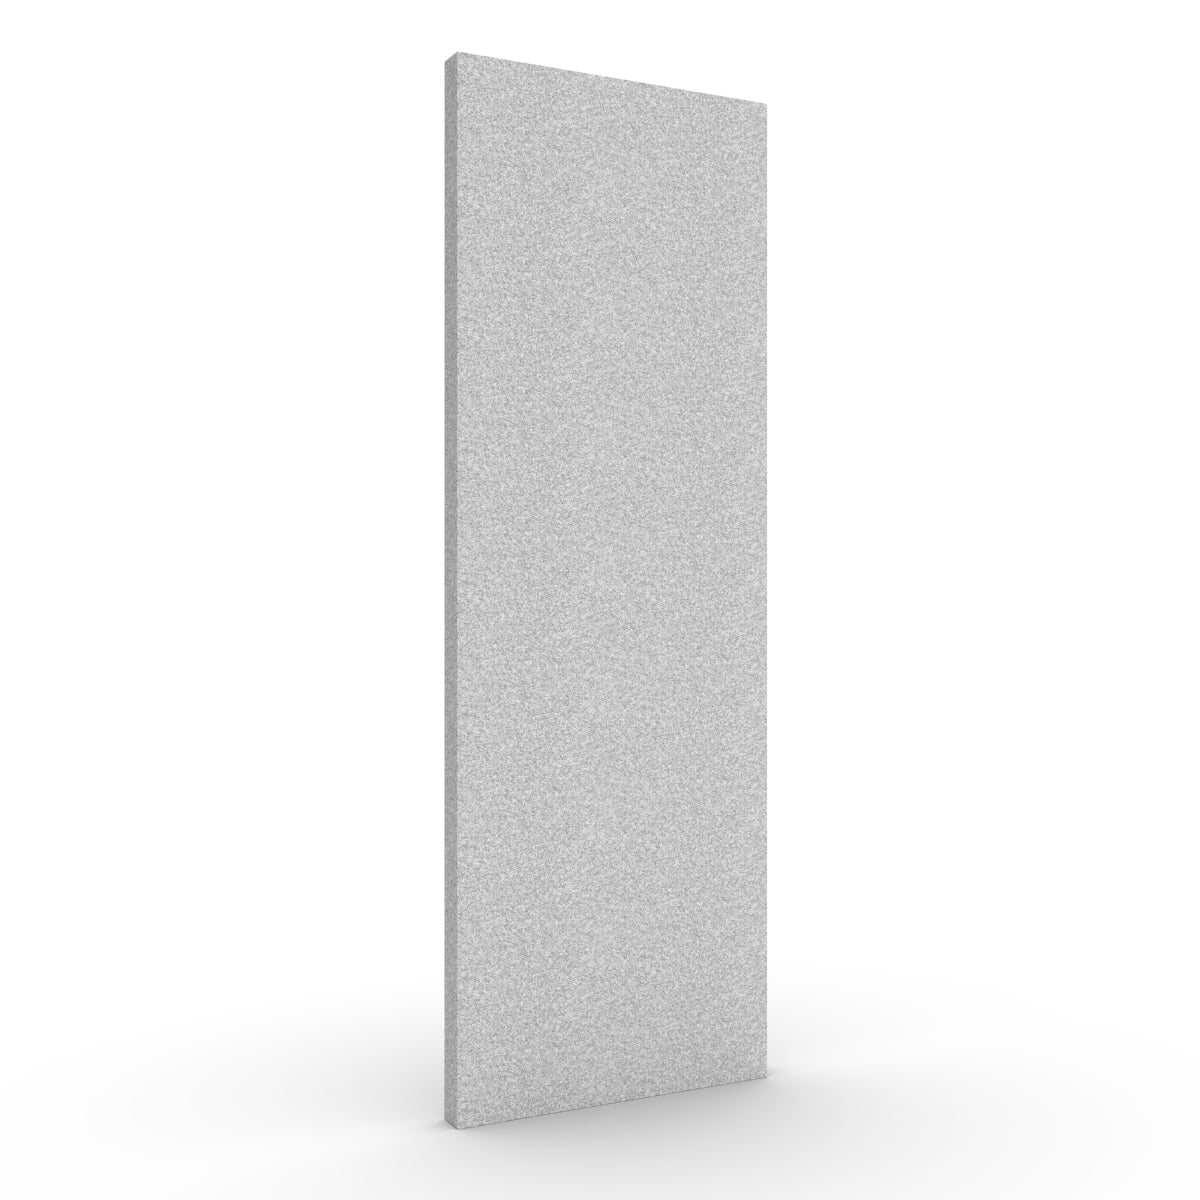 Basic wall sound absorber in light grey. Size 58cmx174cm. Akustikkplater og lyddemping vegg